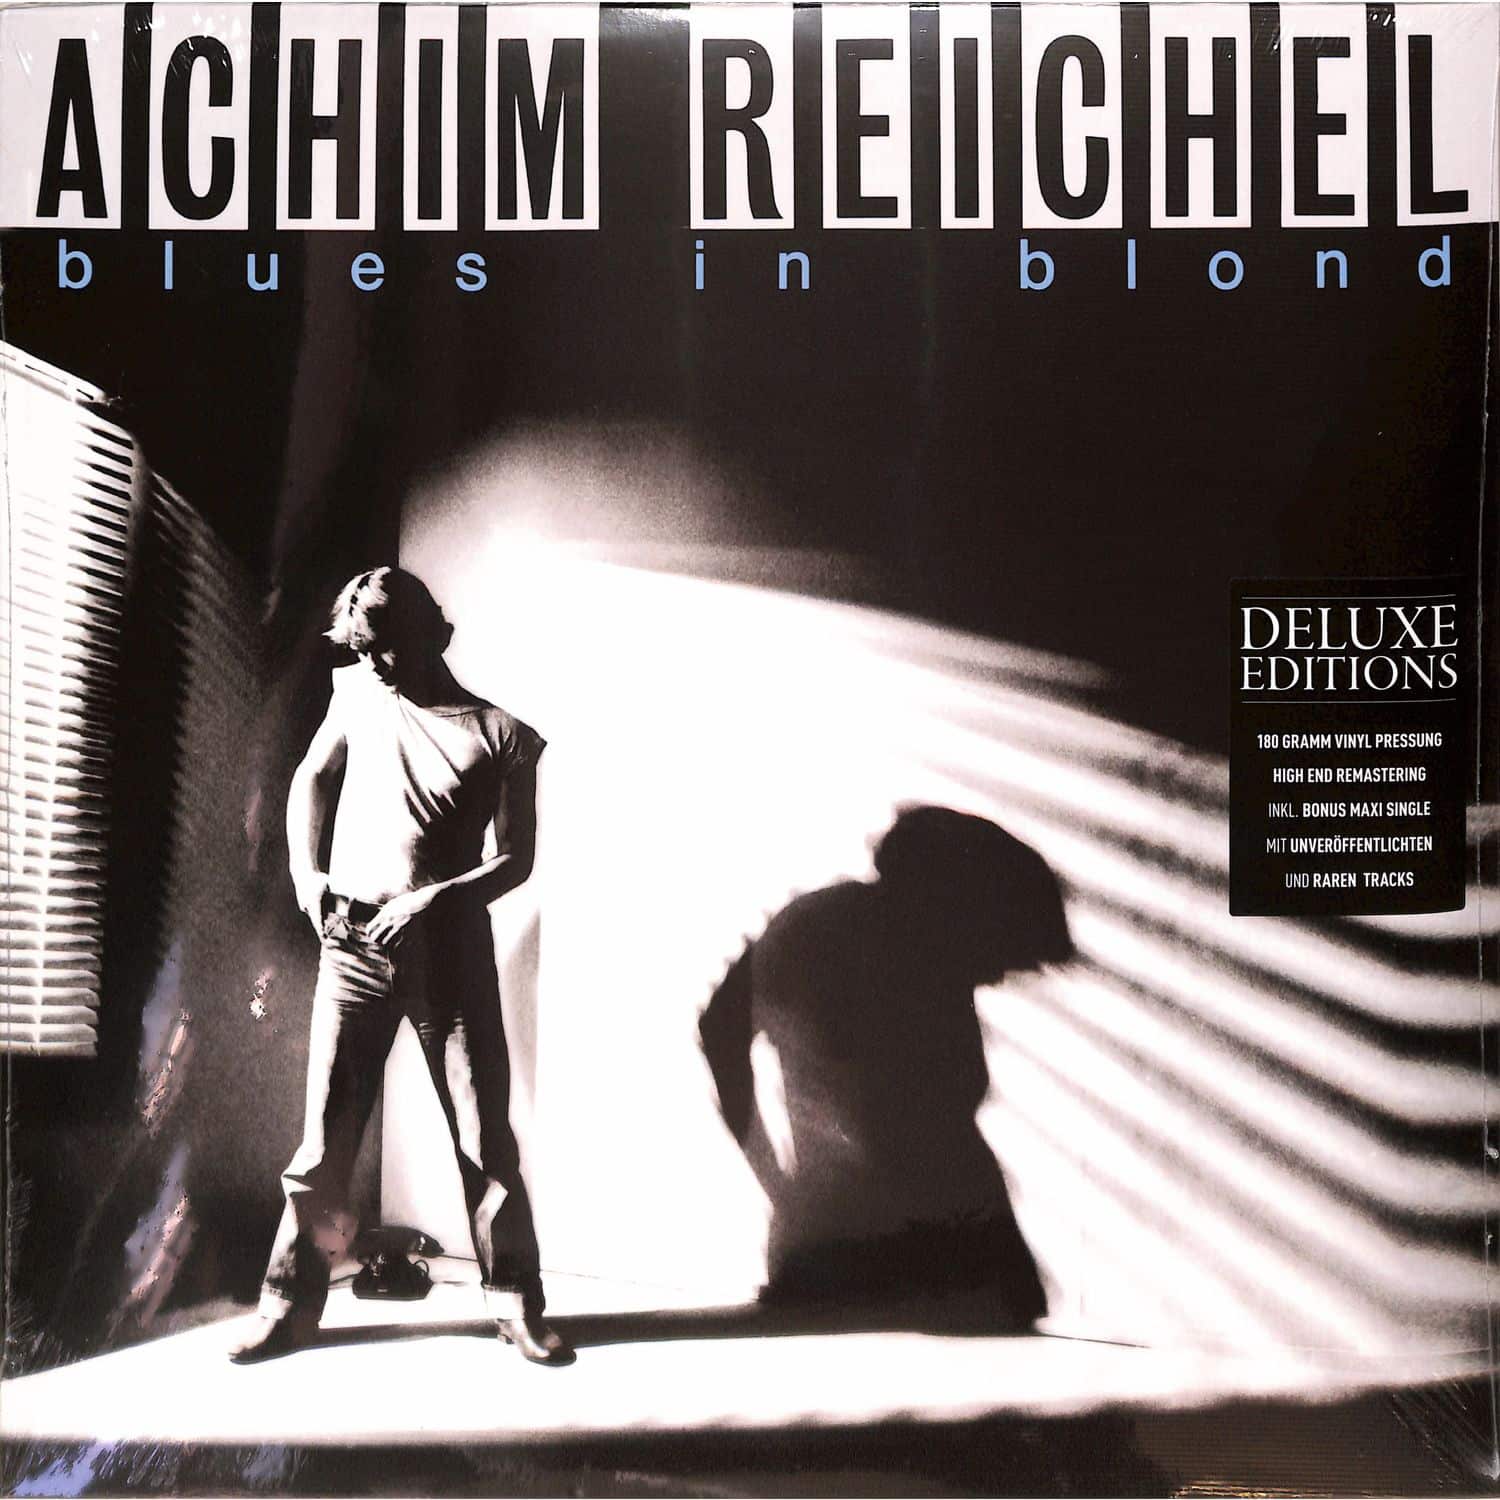 Achim Reichel - BLUES IN BLOND 